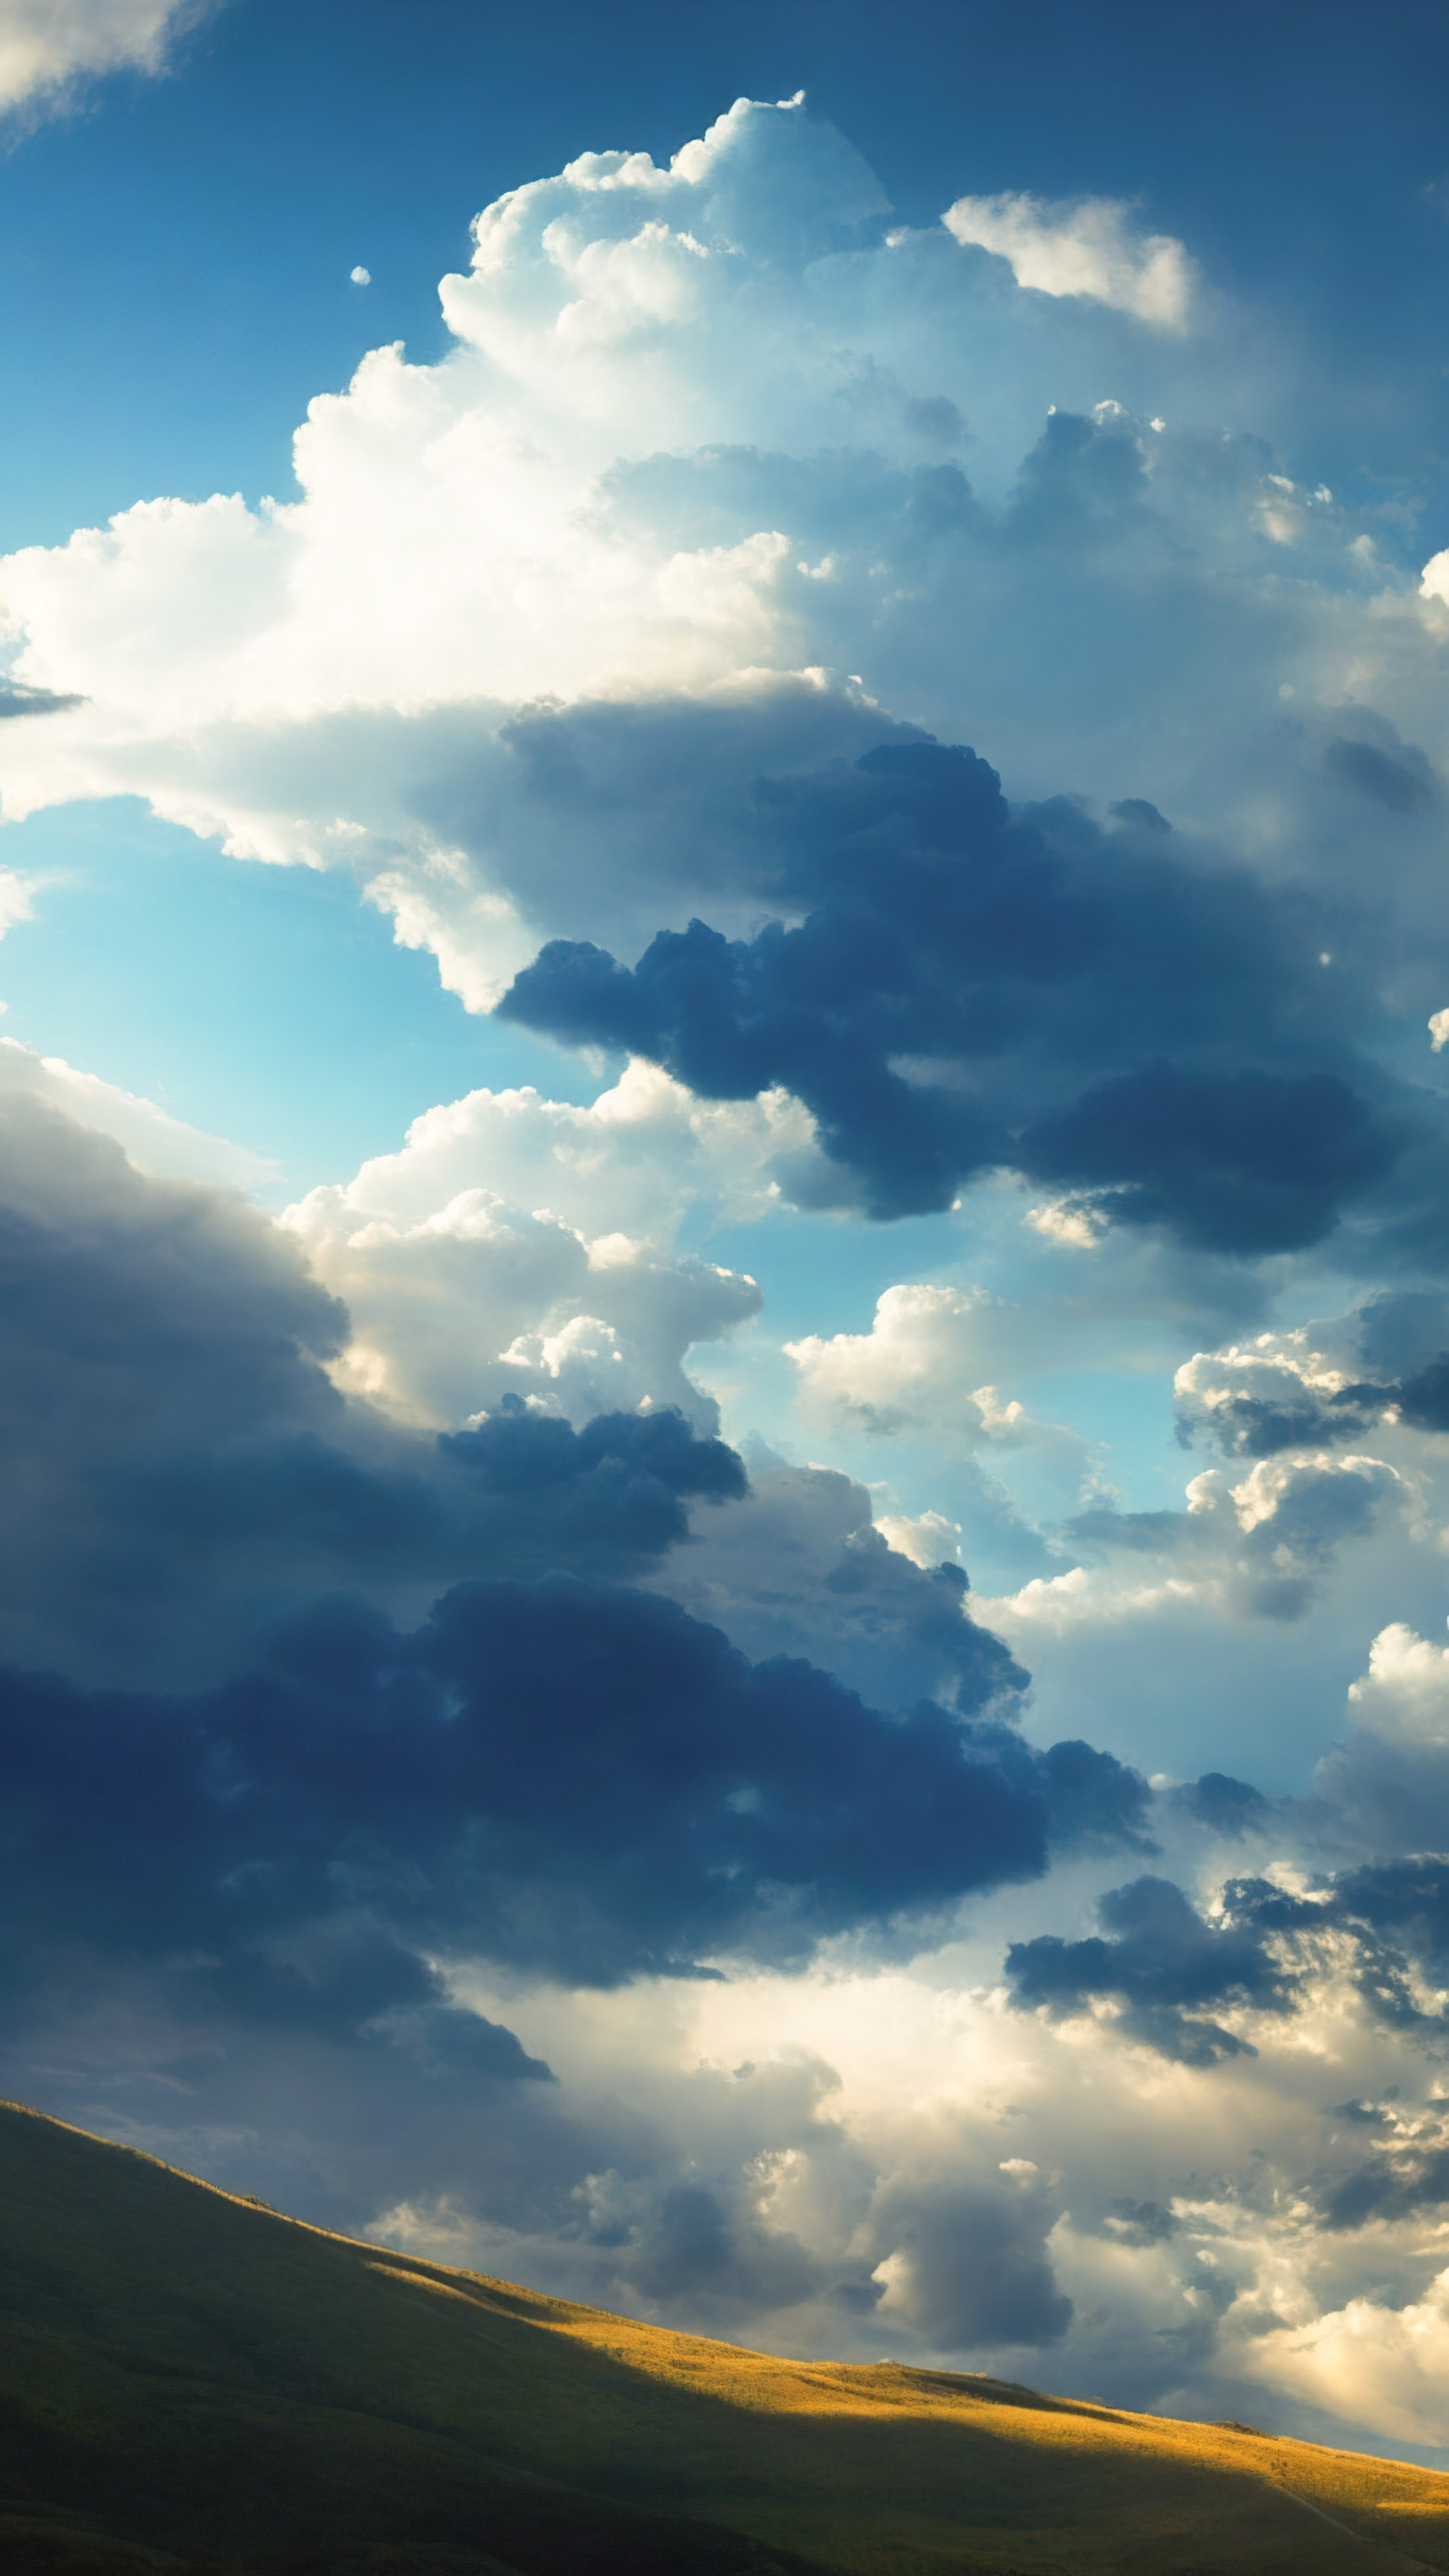 Découvrez le drame de notre arrière-plan de ciel céleste, présentant un ciel dramatique rempli de nuages cumulonimbus imposants projetant des ombres sur une vallée ensoleillée.